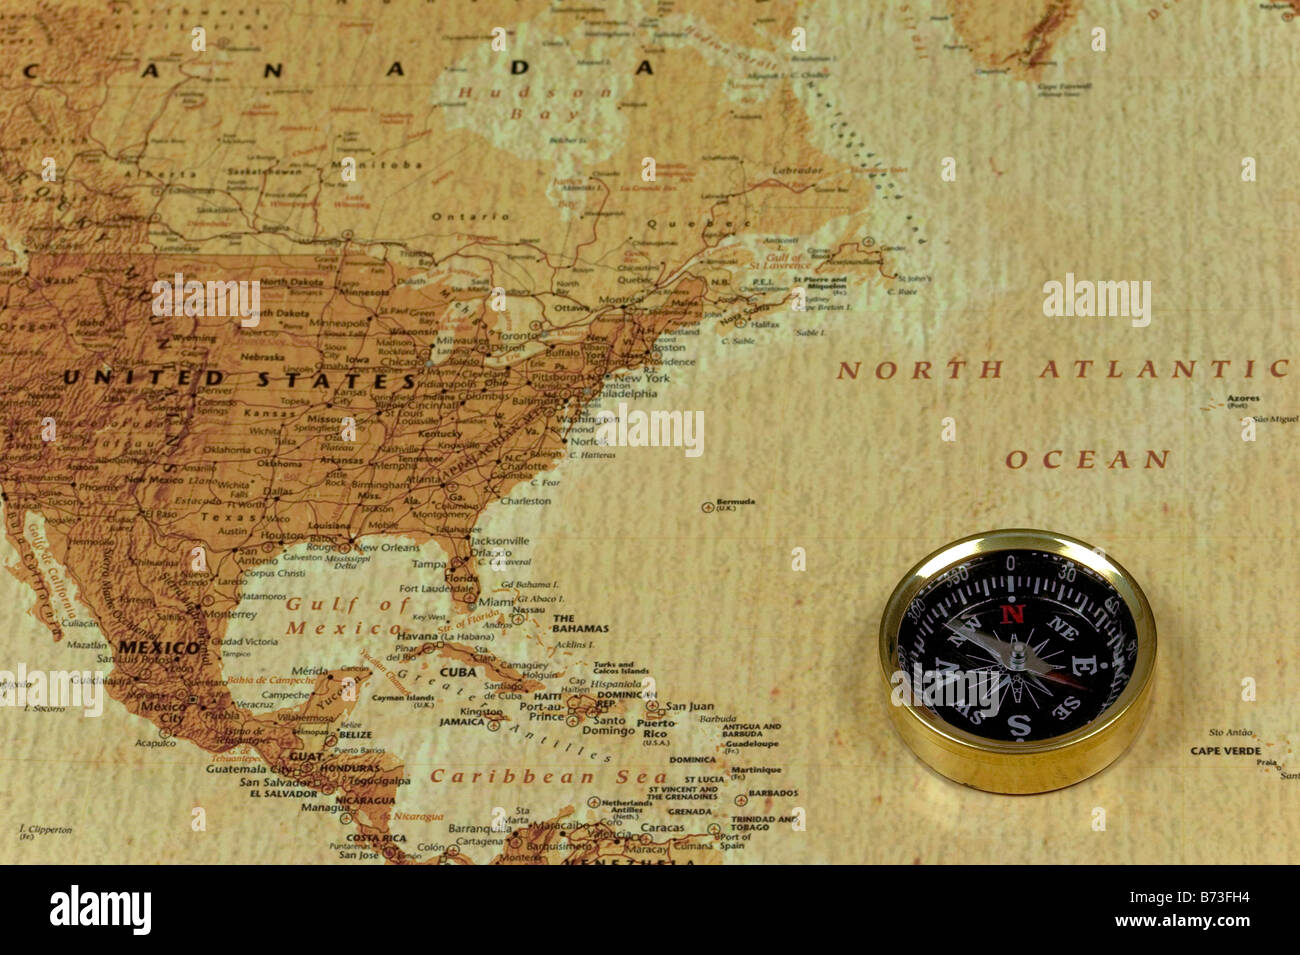 Una brújula brss sobre un viejo mapa que muestra el océano Atlántico del Norte y los Estados Unidos de América Foto de stock